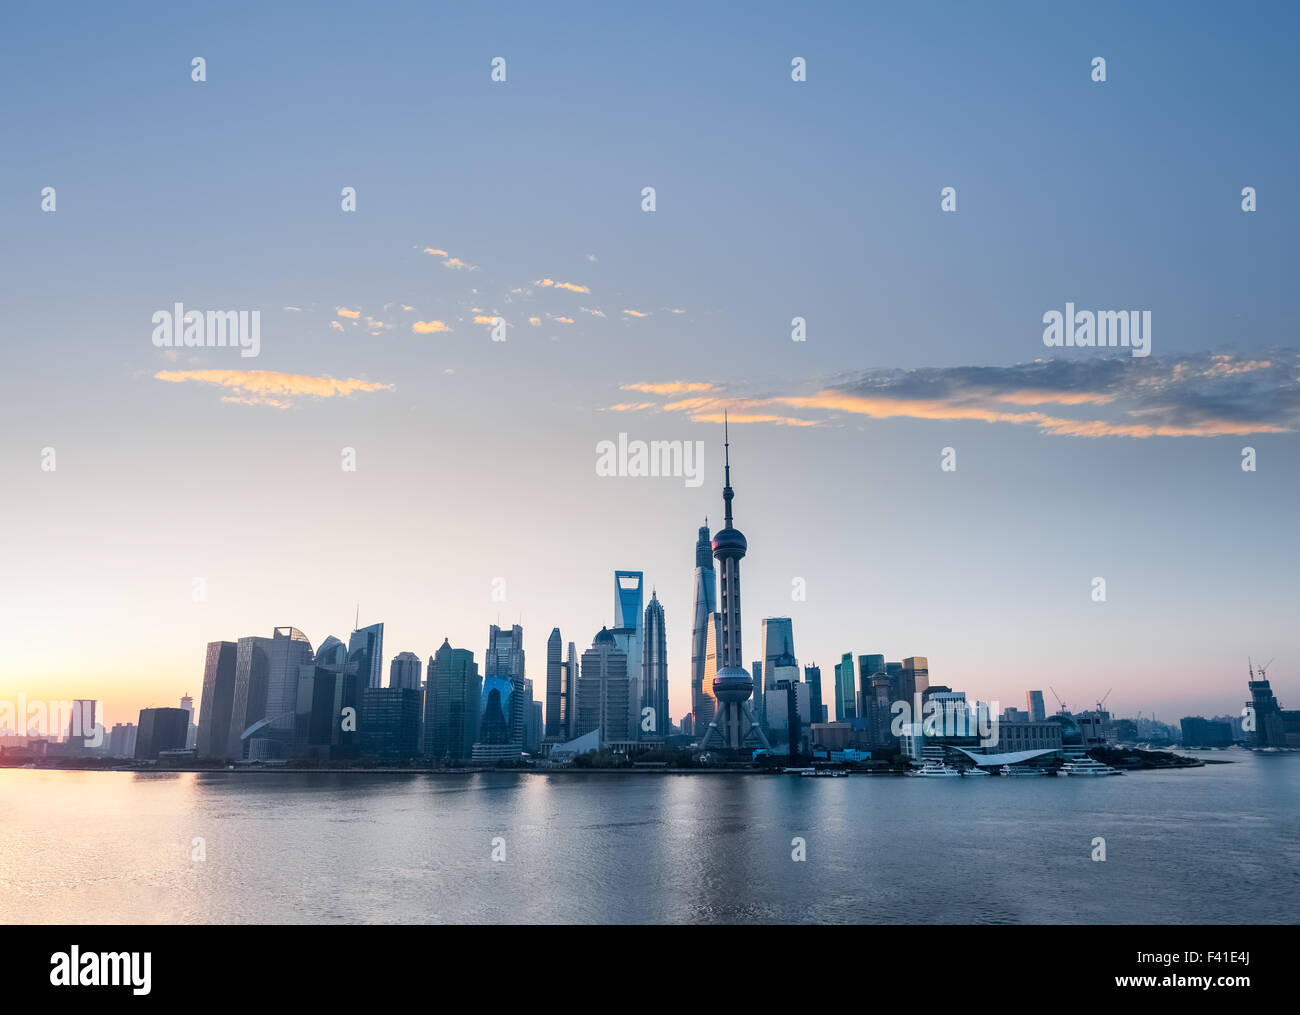 Lo skyline di Shanghai con nubi roseo di alba Foto Stock